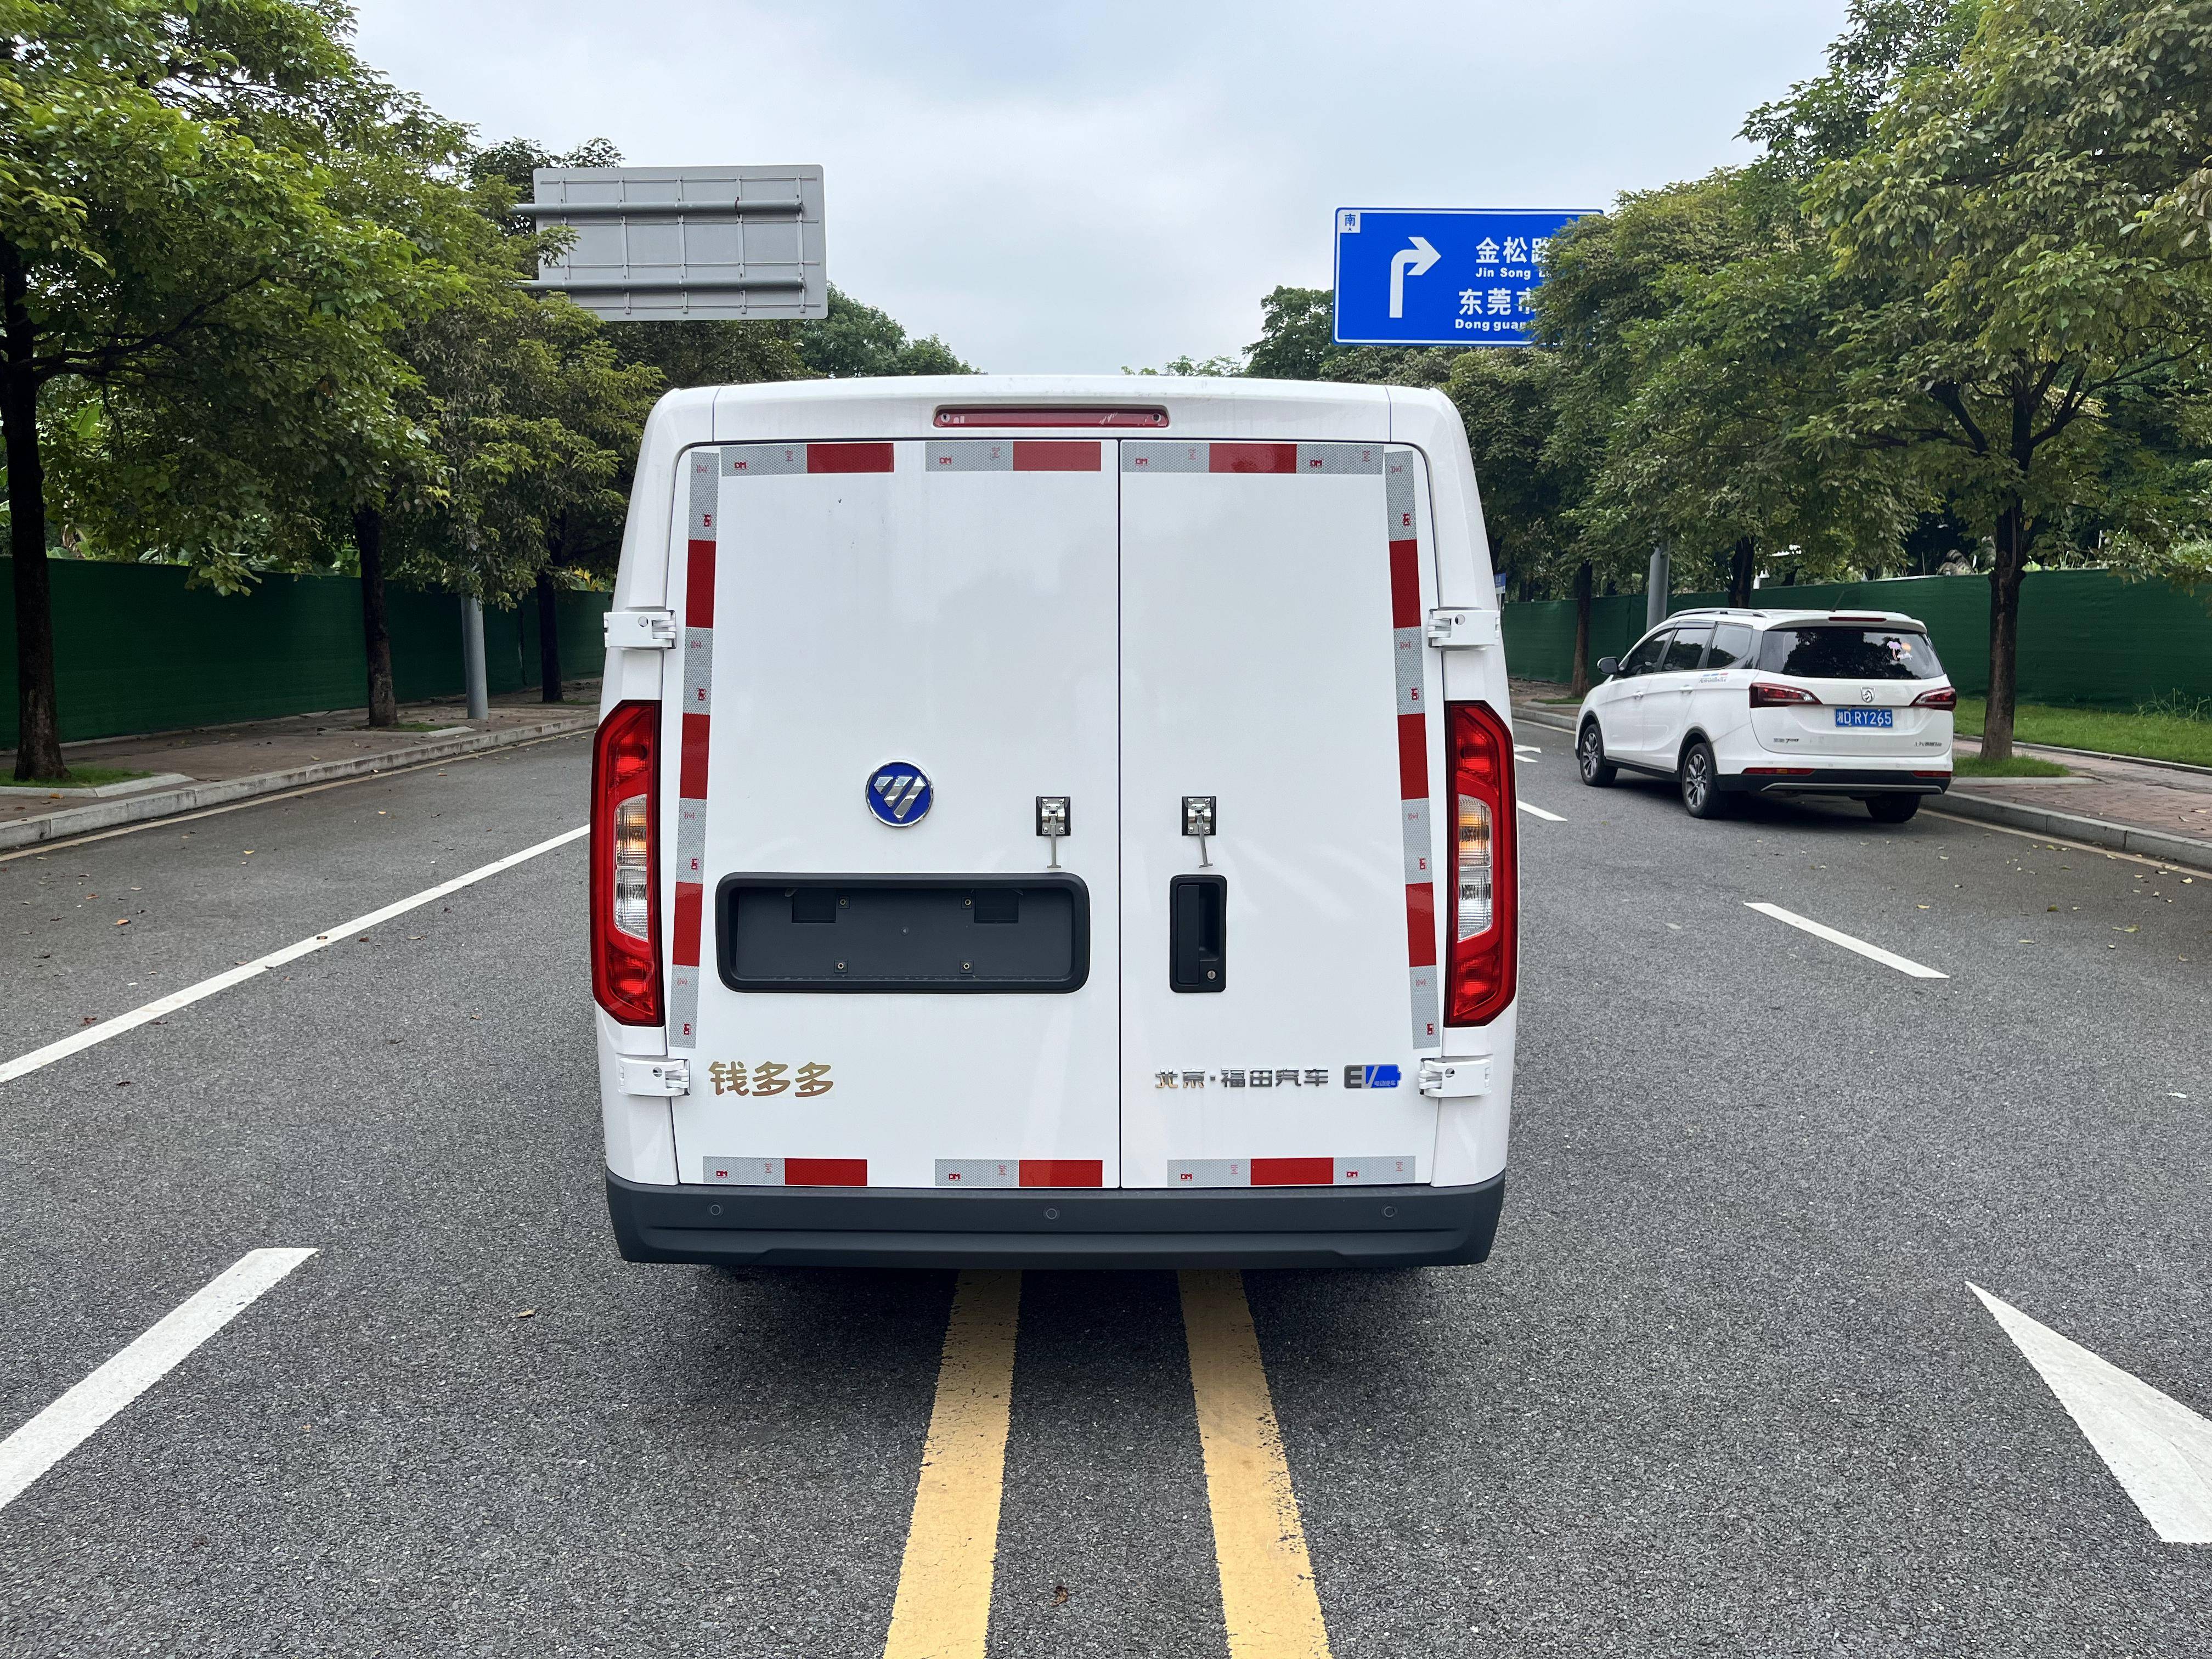 福田智蓝e6 新能源面包车登陆东莞,优惠租车方案引关注